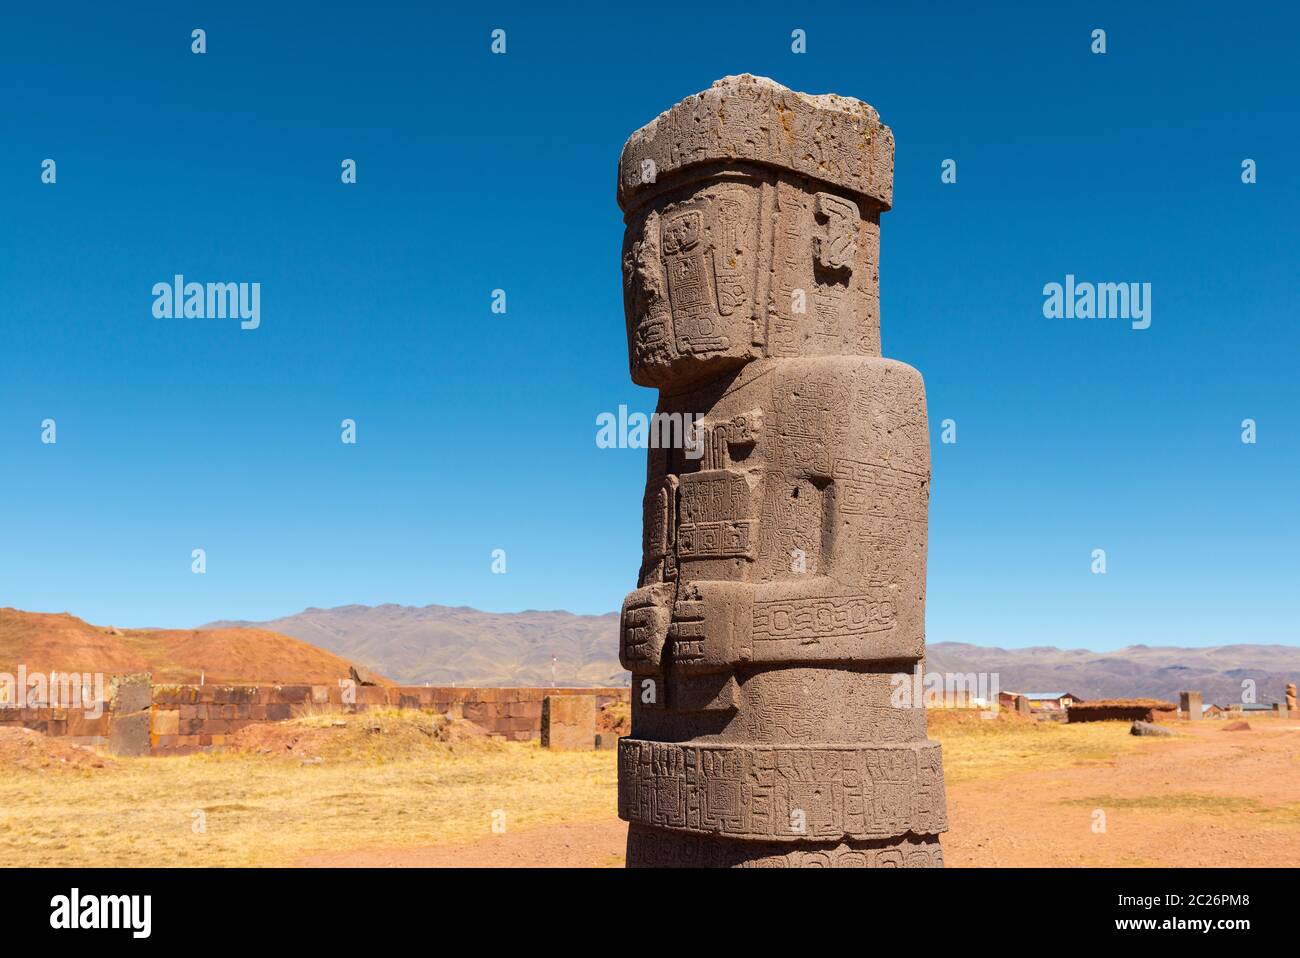 La statua monolitica di Ponce nell'antica città di Tiwanaku (Tiahuanaco) vicino a la Paz, Bolivia. Foto Stock